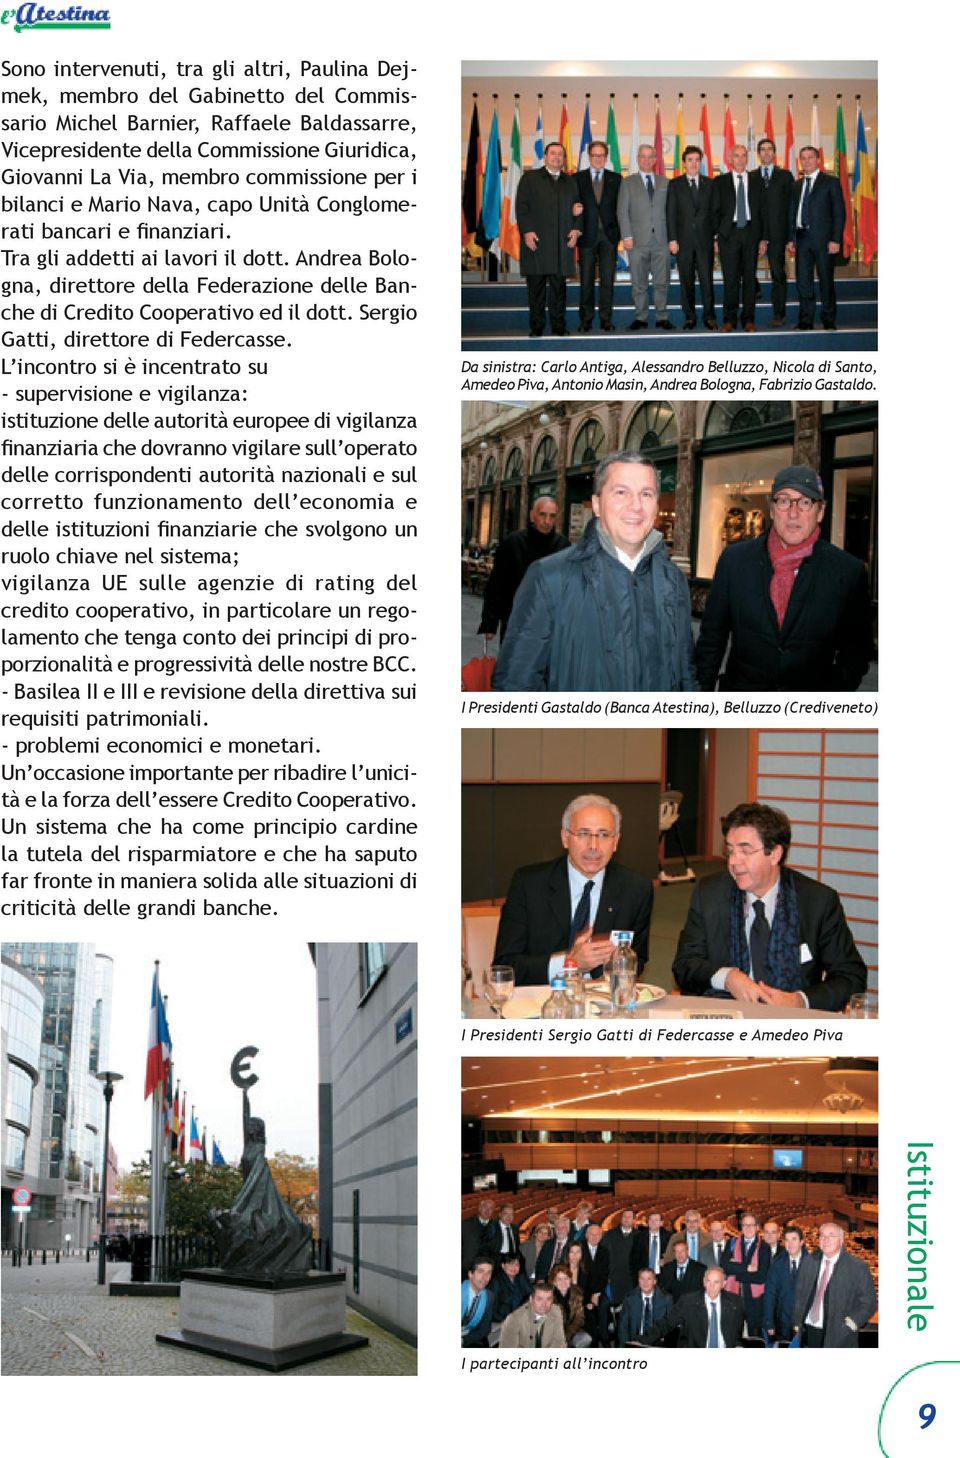 Andrea Bologna, direttore della Federazione delle Banche di Credito Cooperativo ed il dott. Sergio Gatti, direttore di Federcasse.